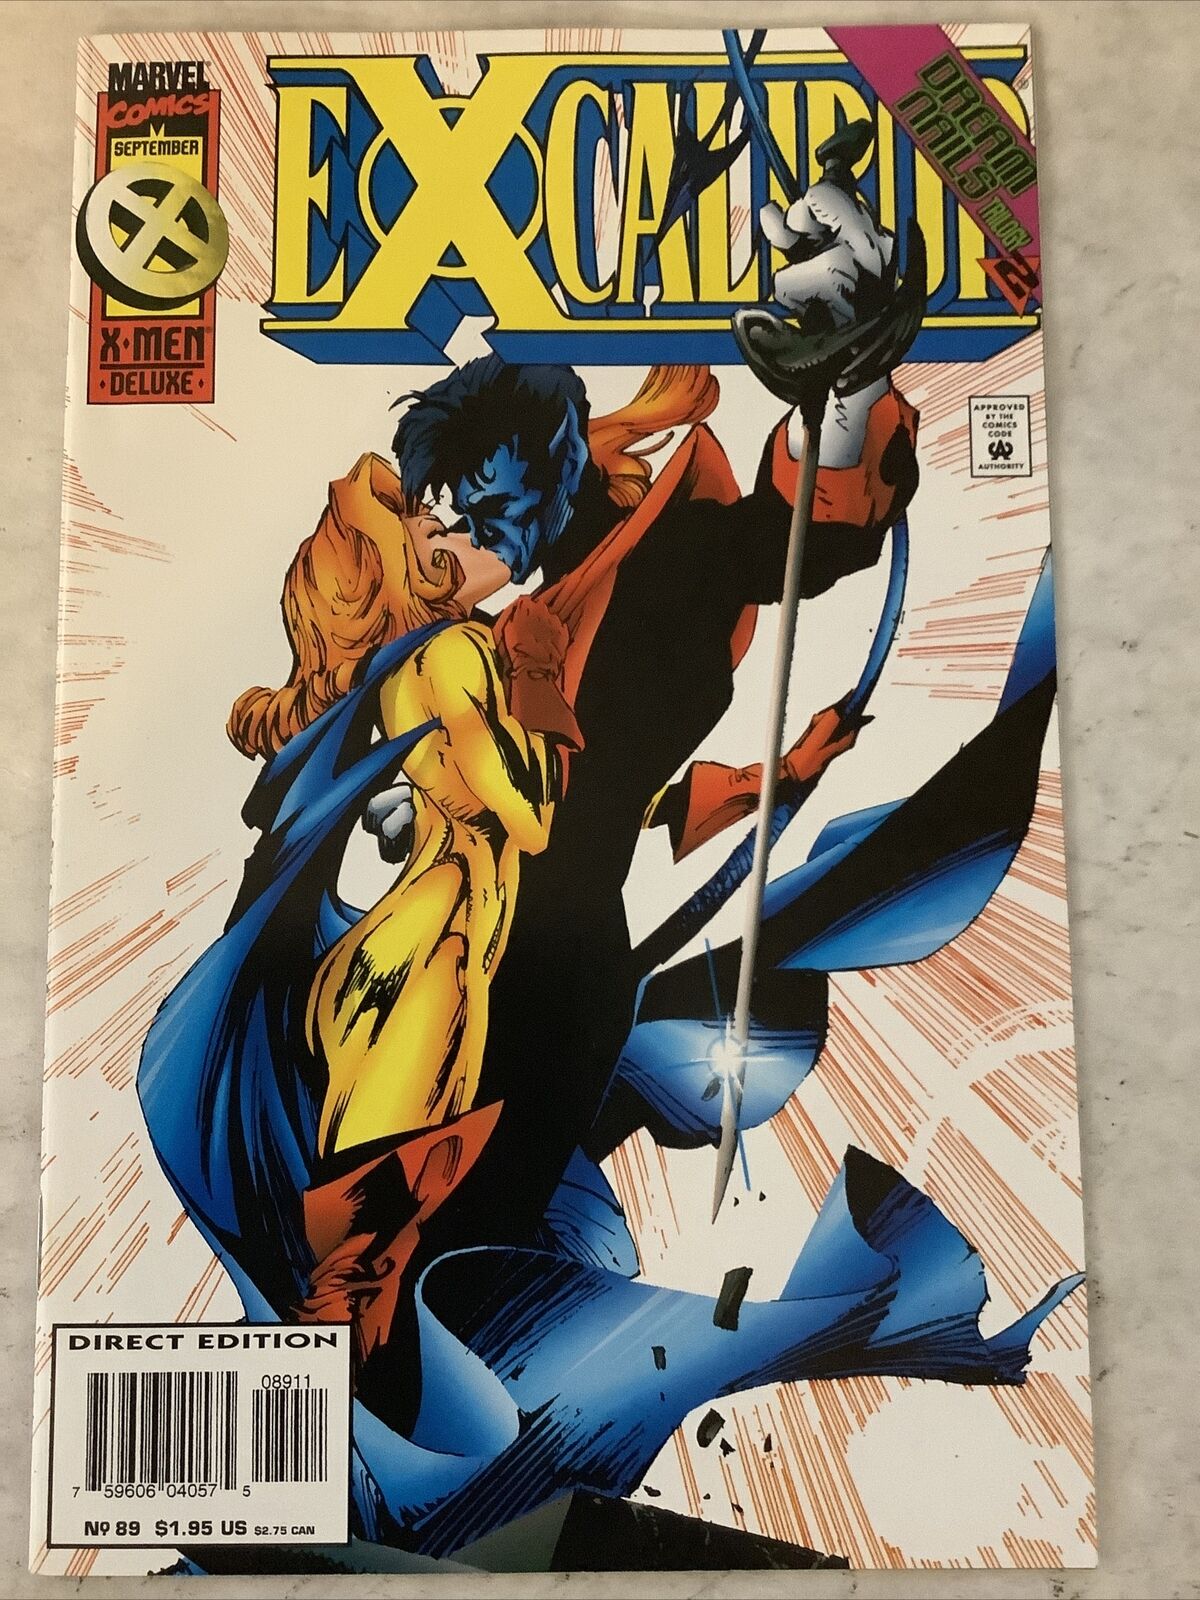 Excalibur #89 (Sept 1995, Marvel) 9.4 NM Warren Ellis